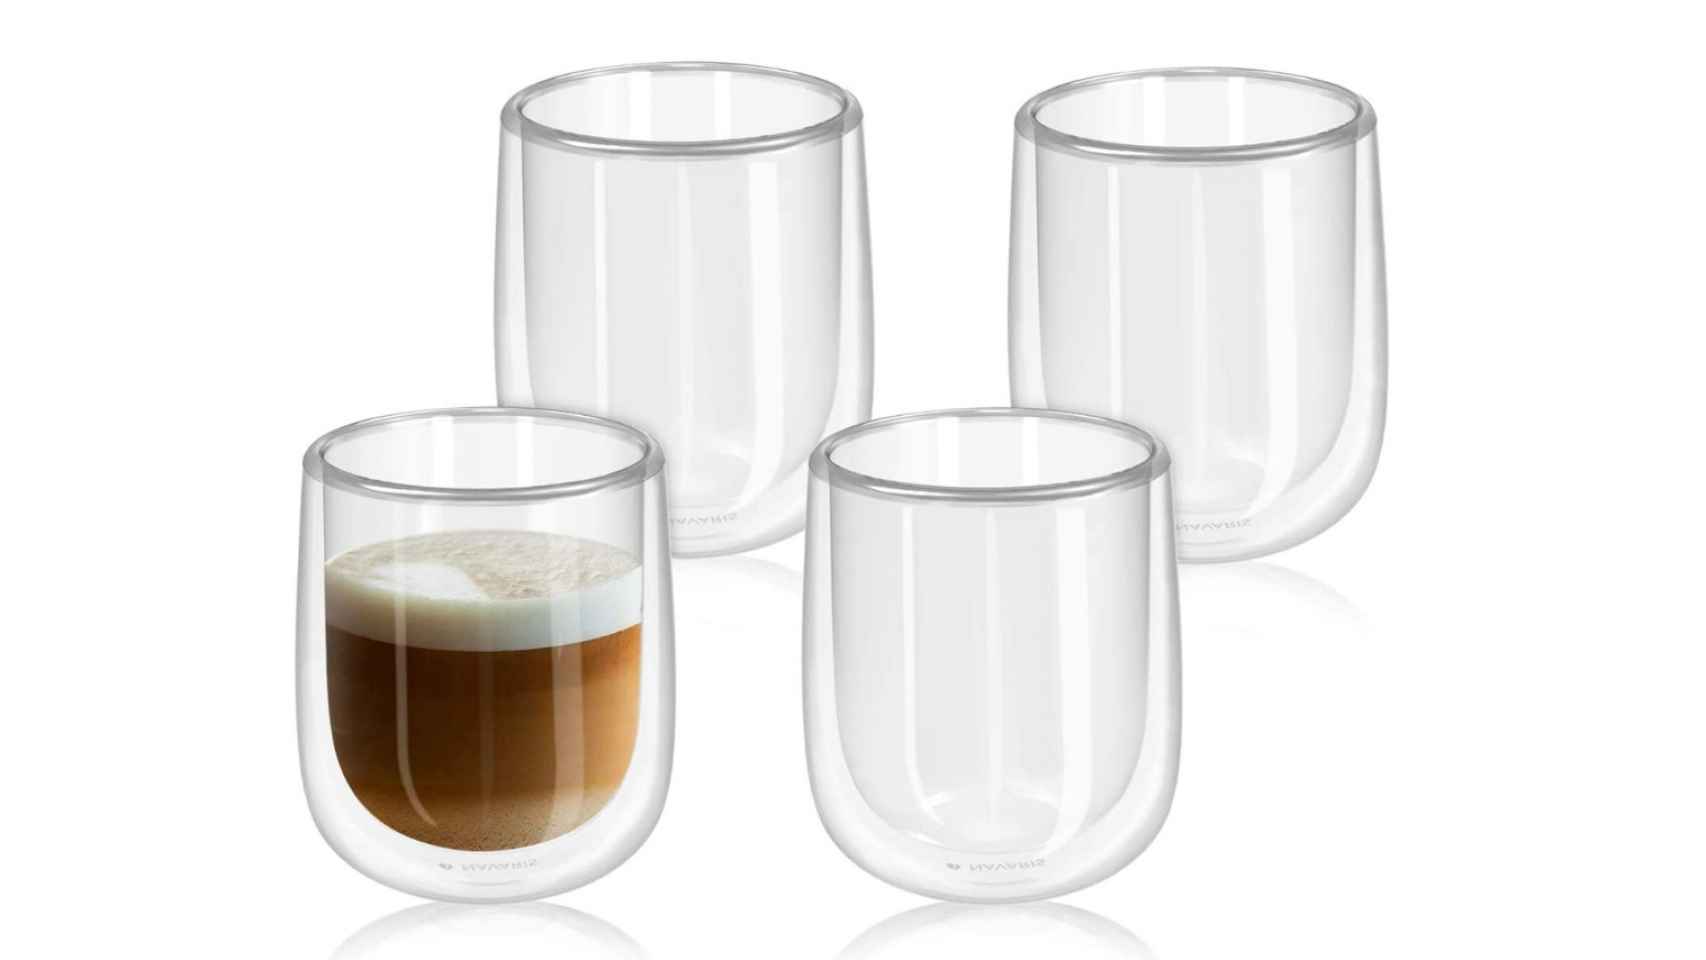 Los vasos de doble cristal: un diseño innovador perfecto para